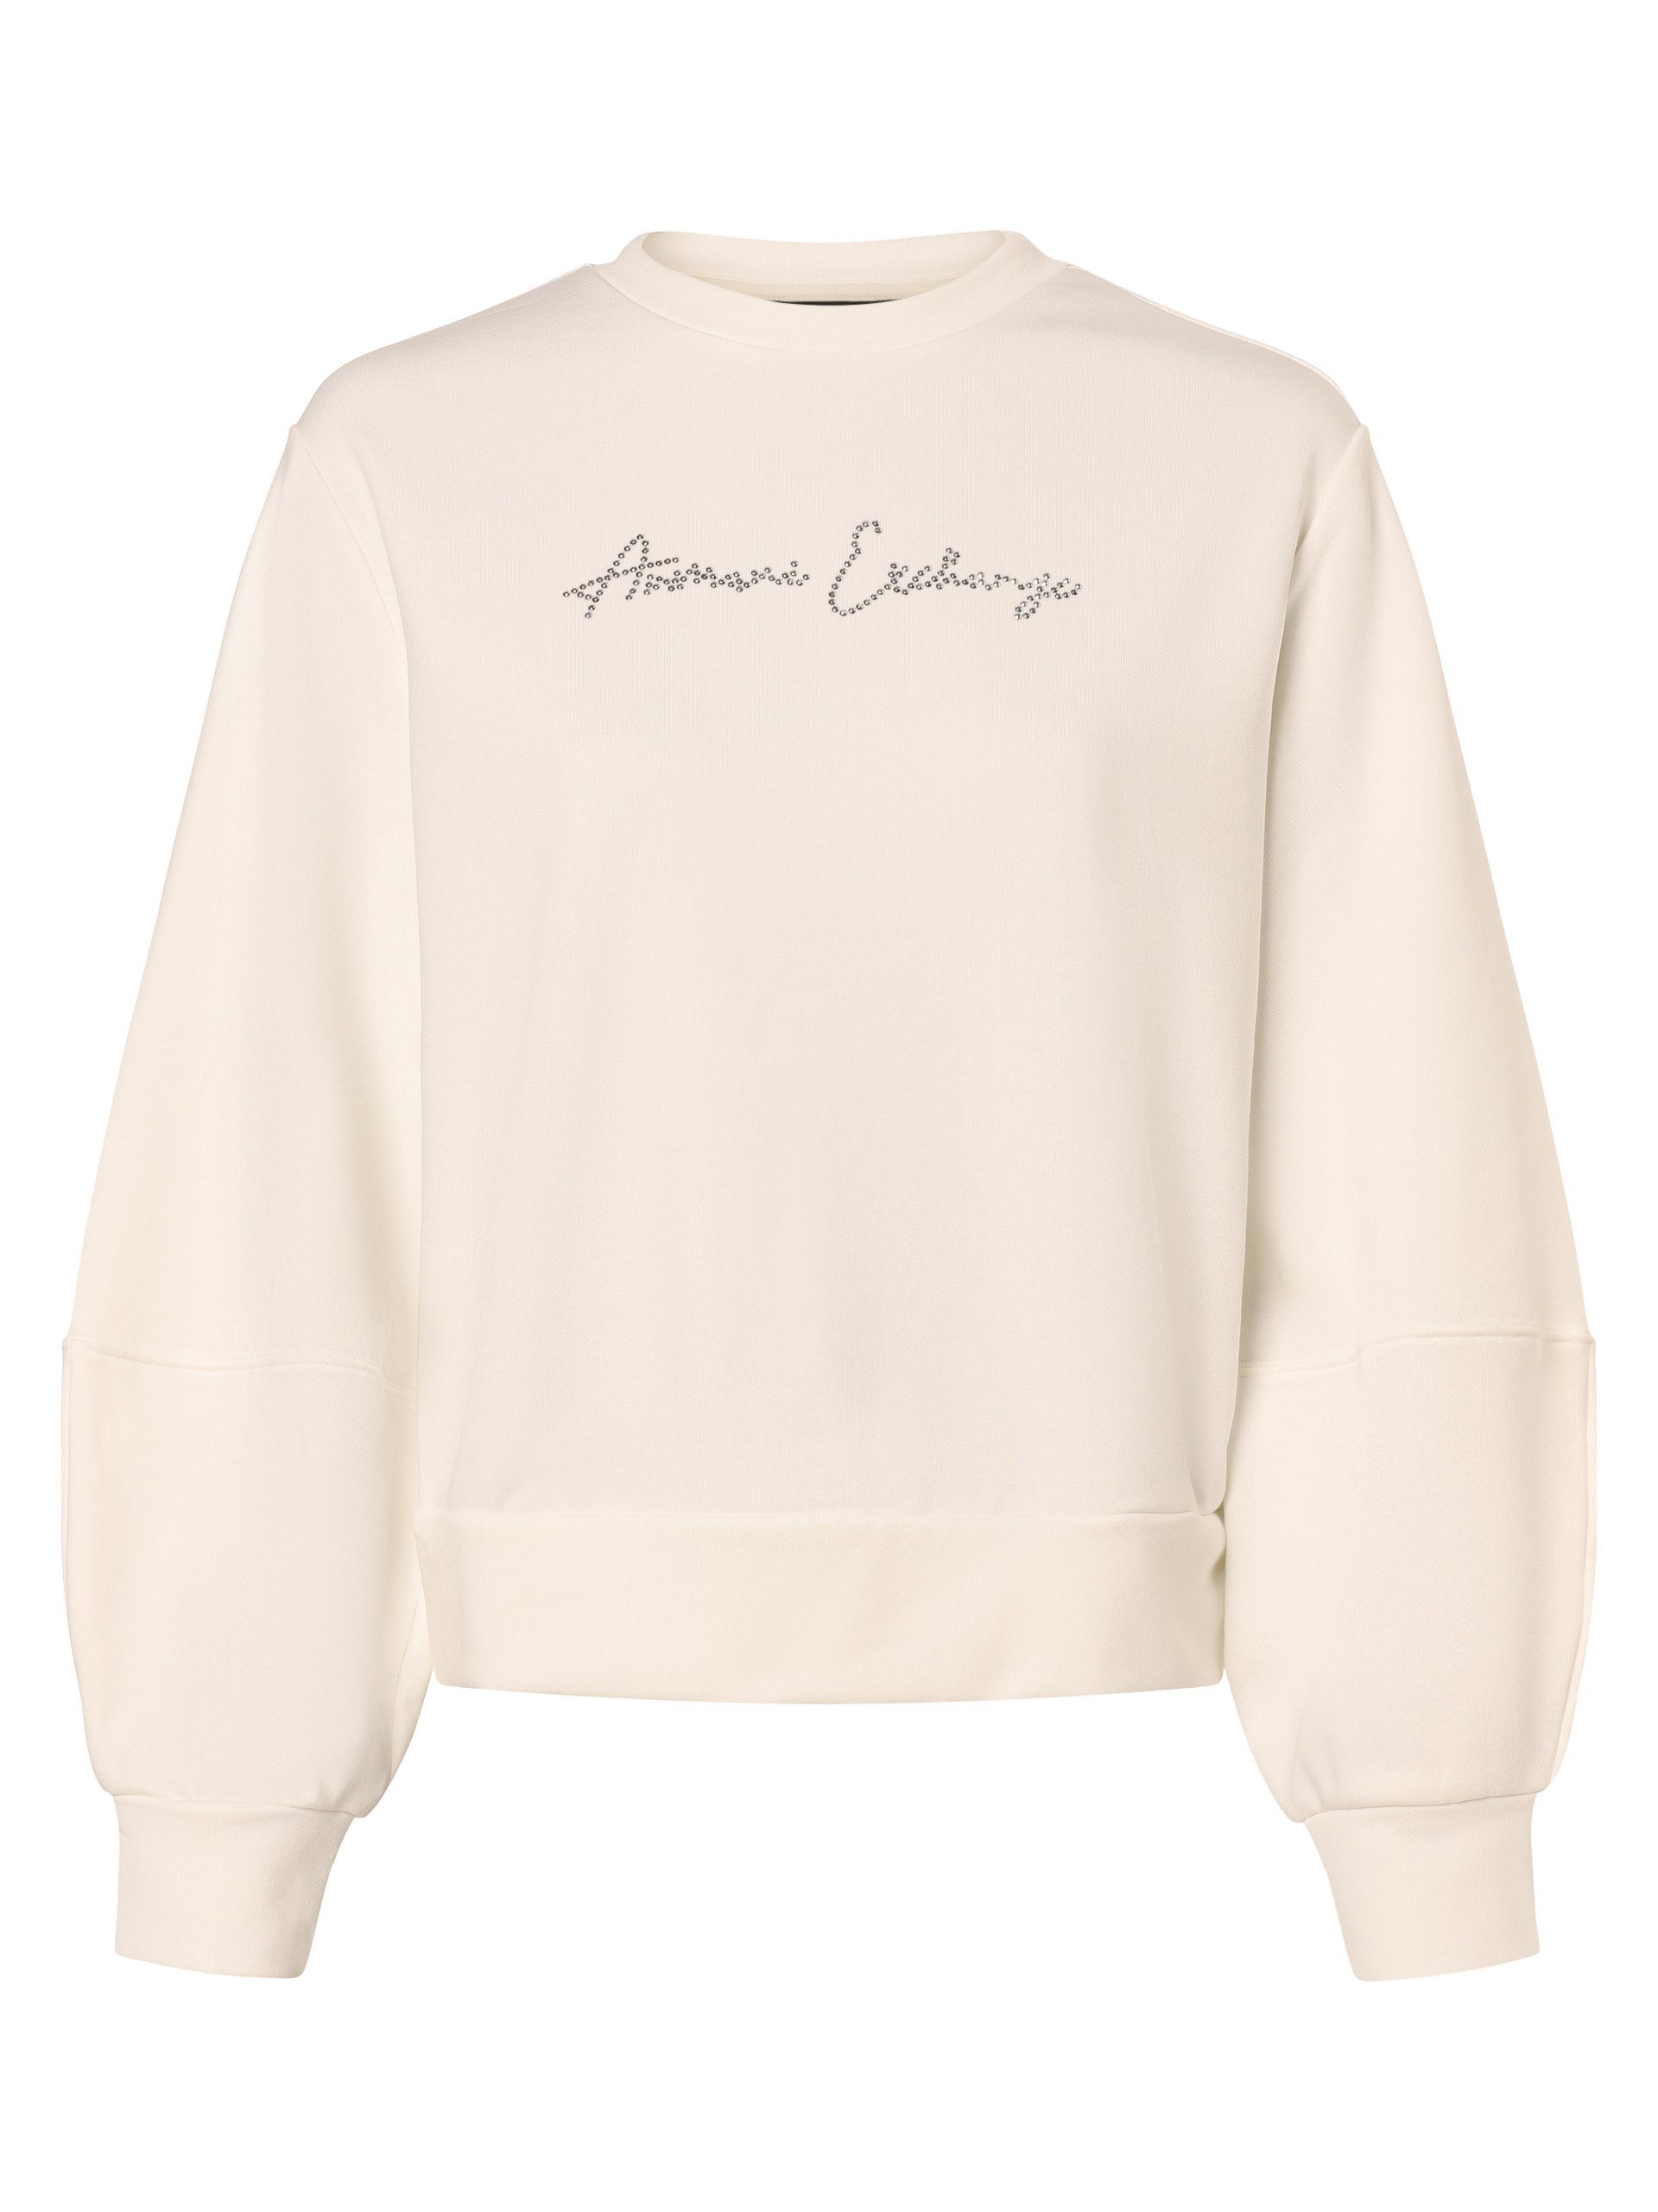 Armani Exchange Connected Sweatshirt